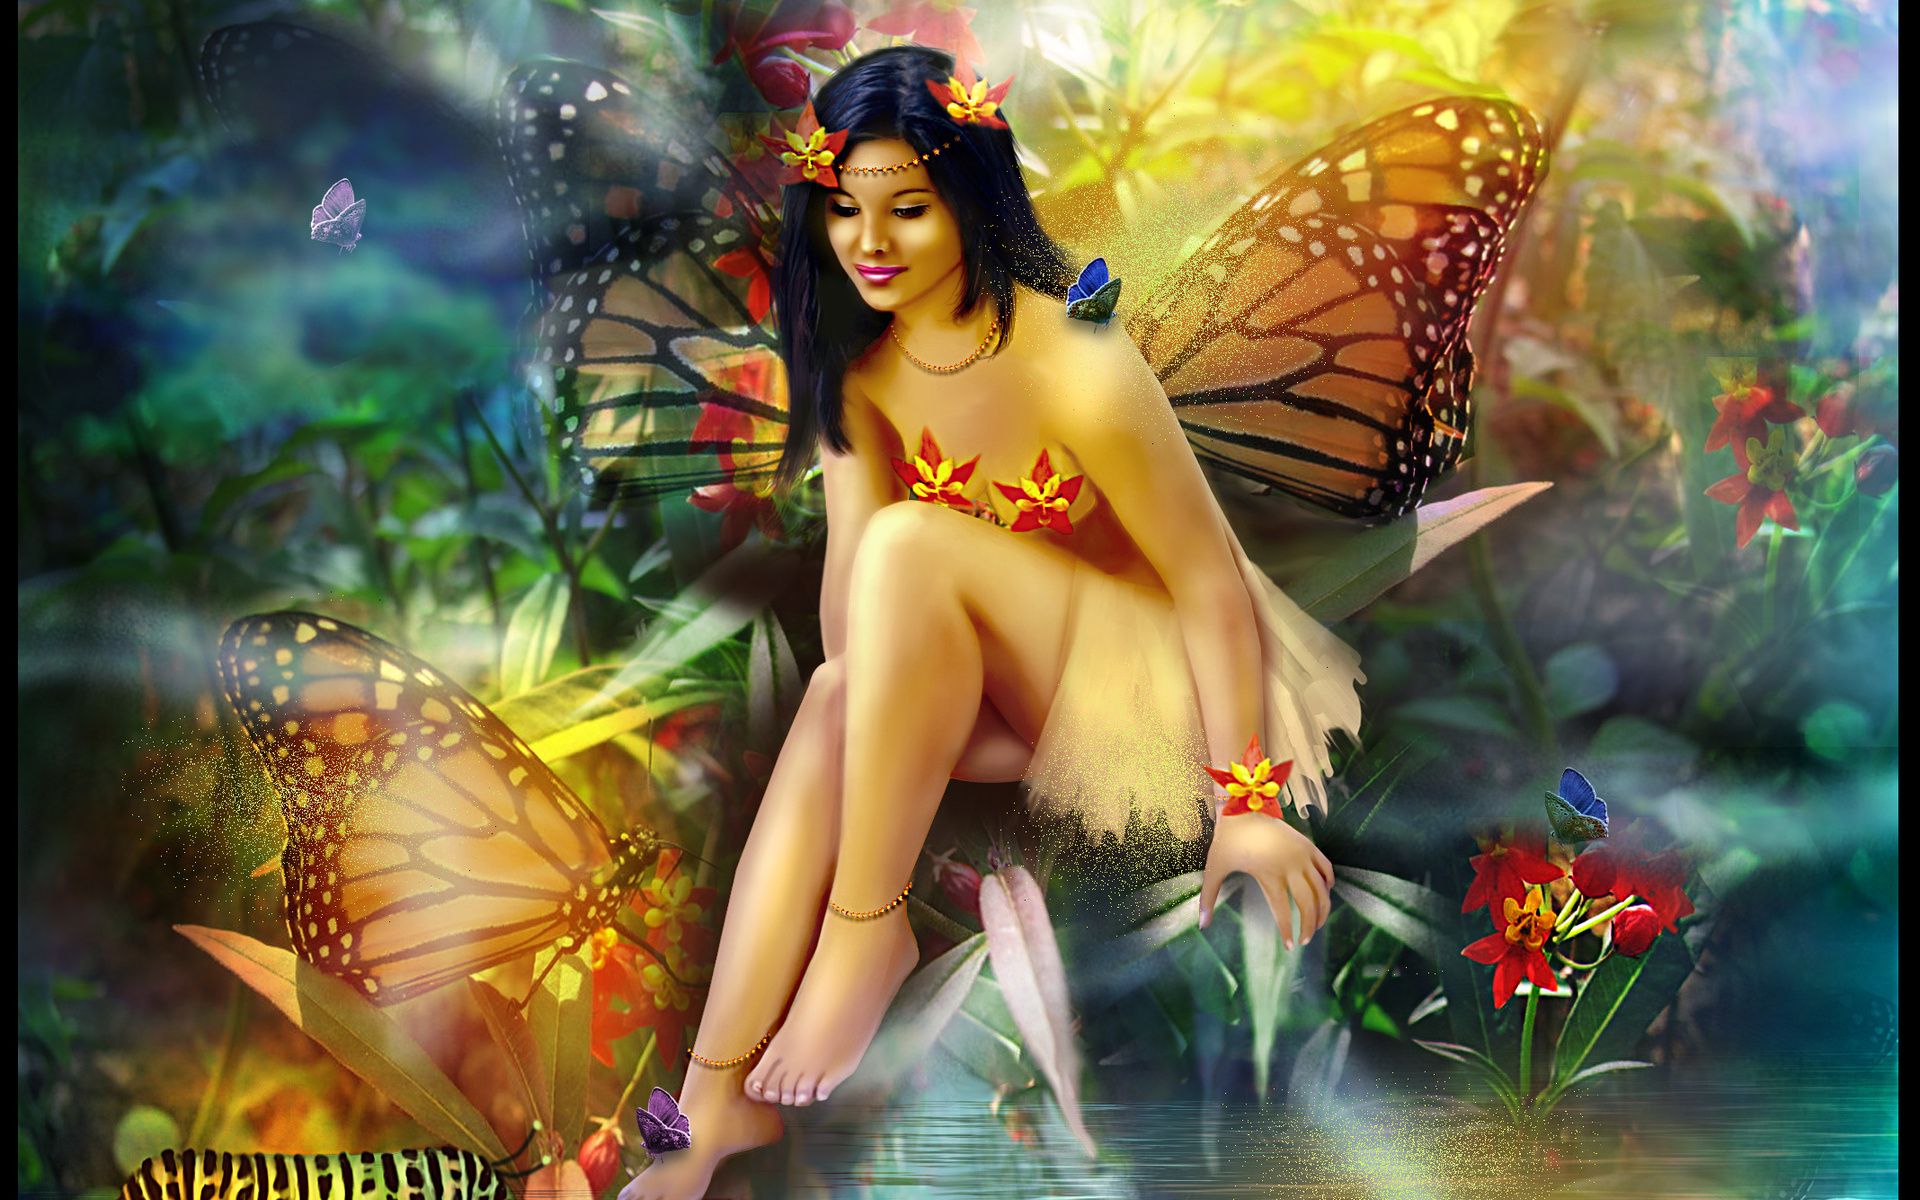 Butterfly fairy magical girl girls women wallpaperx1200